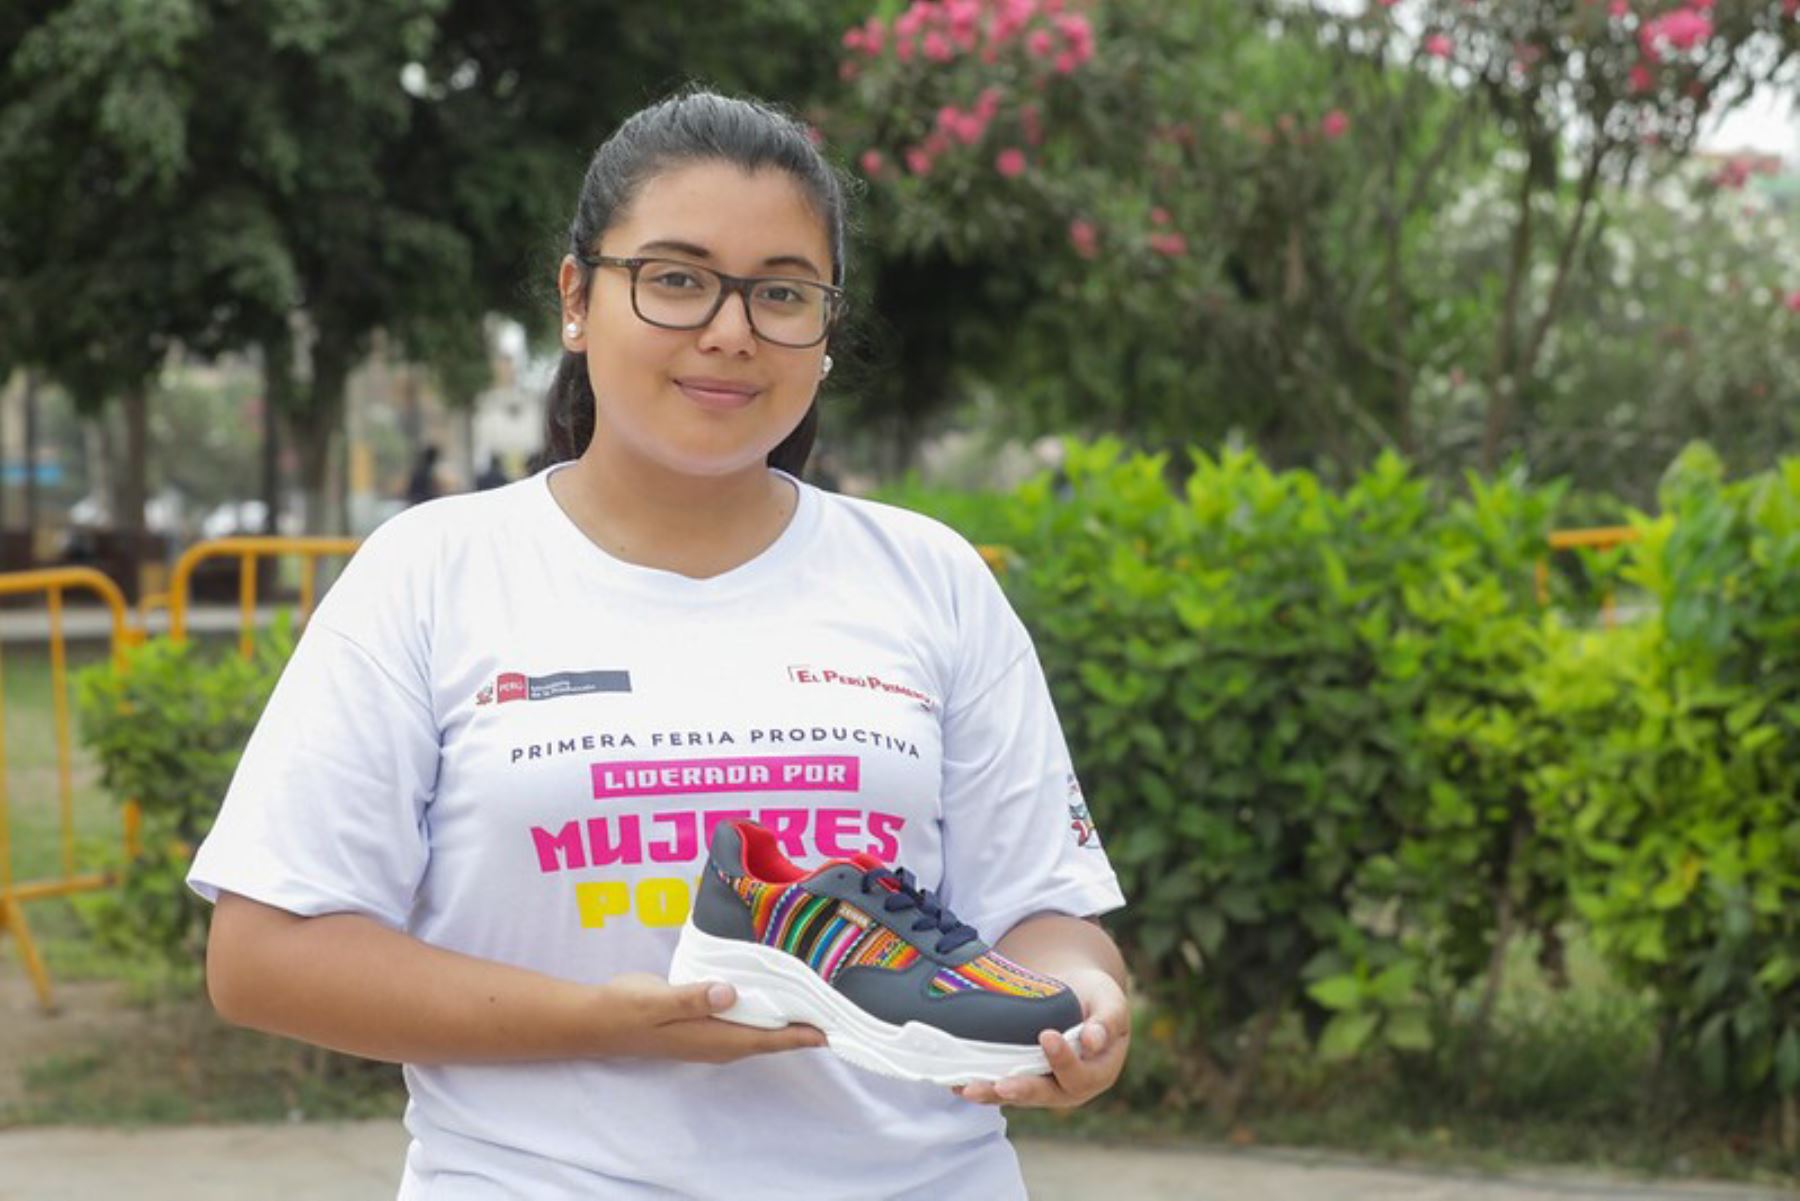 Treinta y cuatro micro y pequeñas empresas (mypes) lideradas por mujeres de ocho regiones del país llegarán a la ciudad de Trujillo, del 12 al 14 de marzo, para presentar sus mejores productos en la feria Perú Produce Mujer 2020, organizada por el Ministerio de la Producción (Produce).